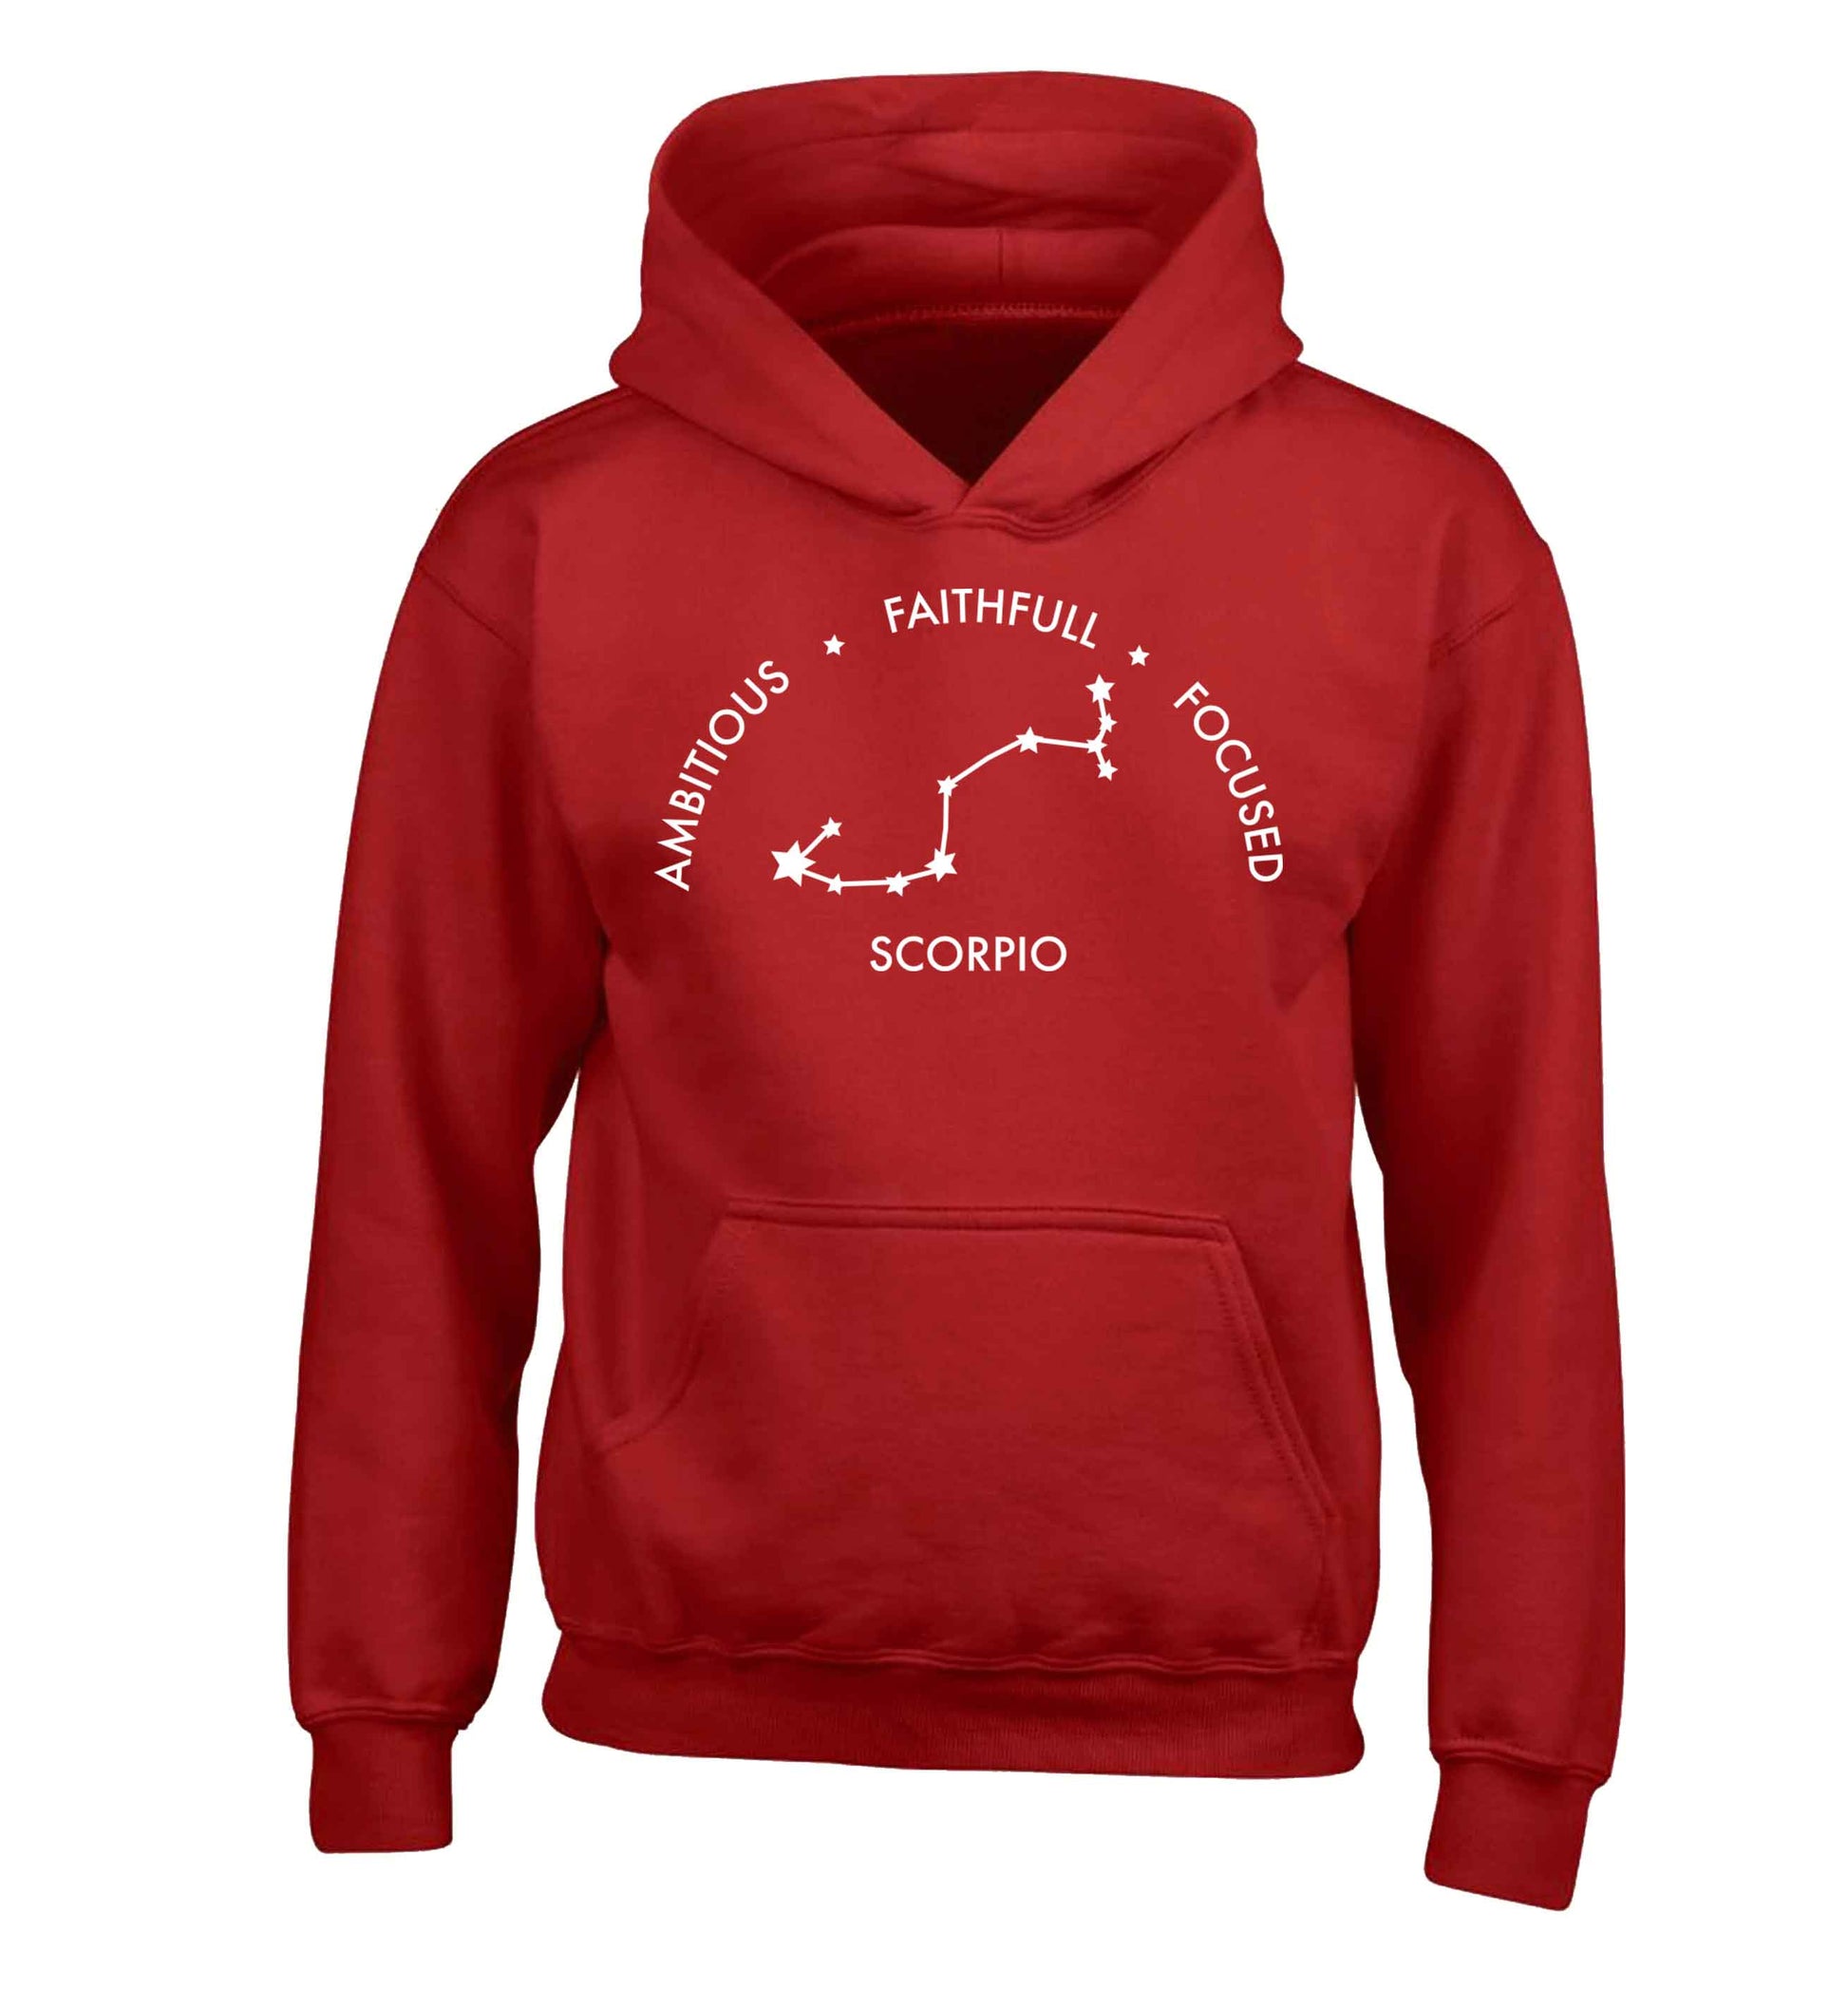 Scorpio, ambitious, faithfull, focused children's red hoodie 12-13 Years